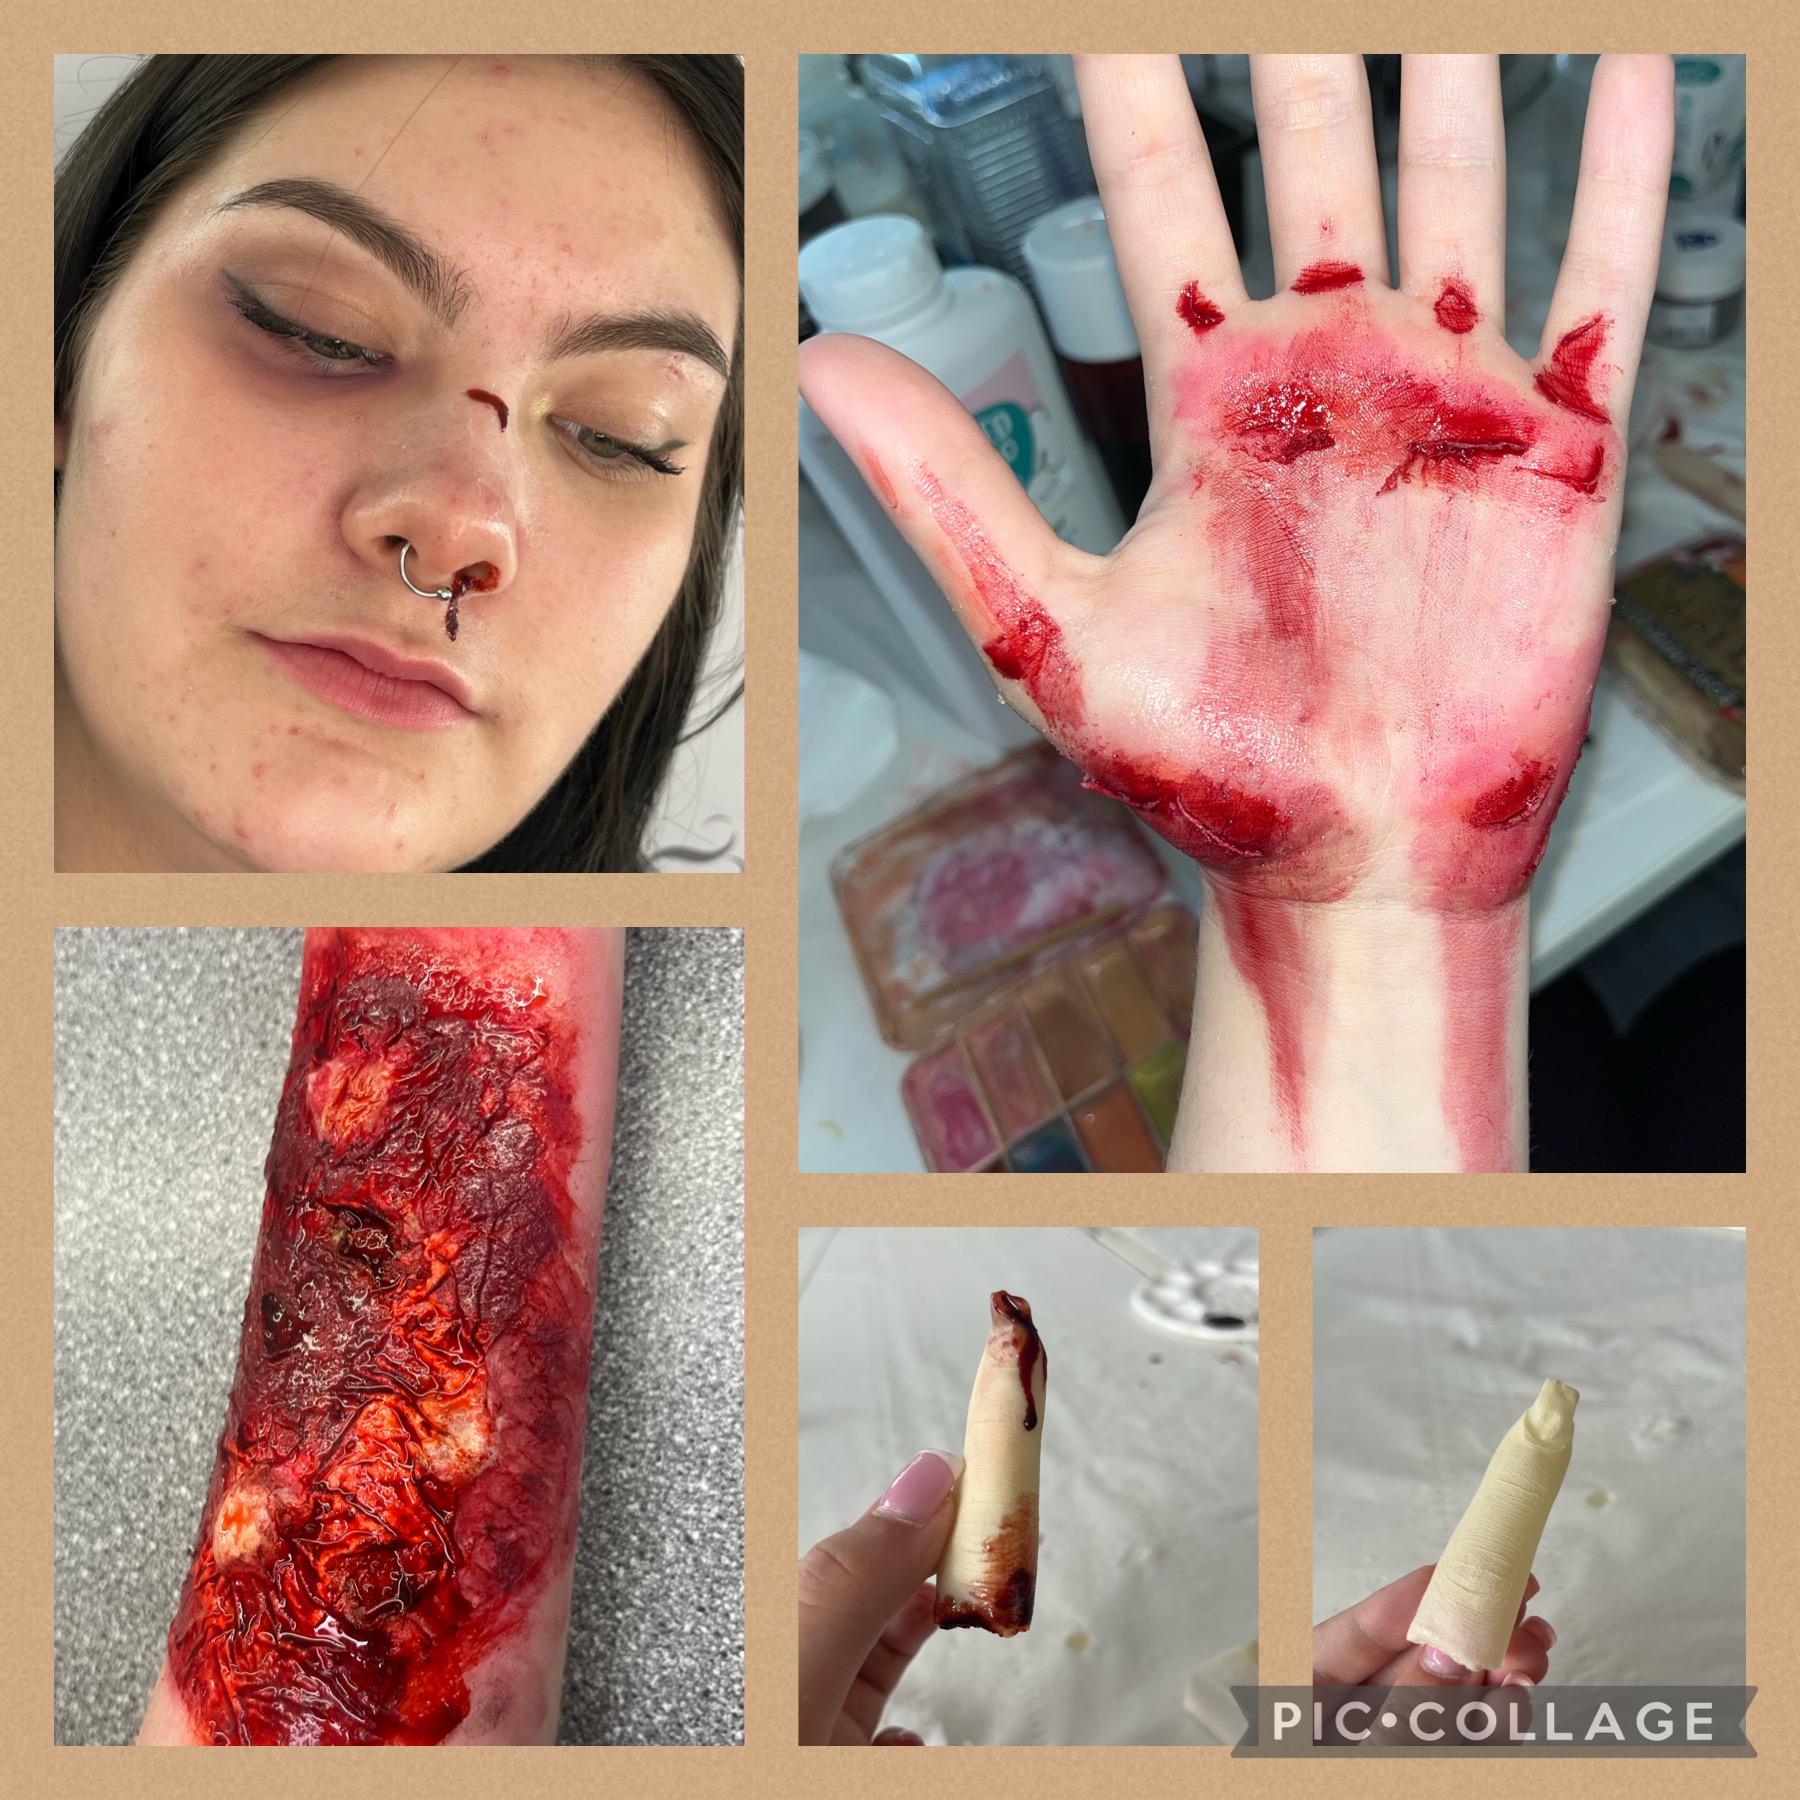 Severed finger/bruised eye/broken nose/burned forearm/grazed hand all created during Level 3 Media Makeup.